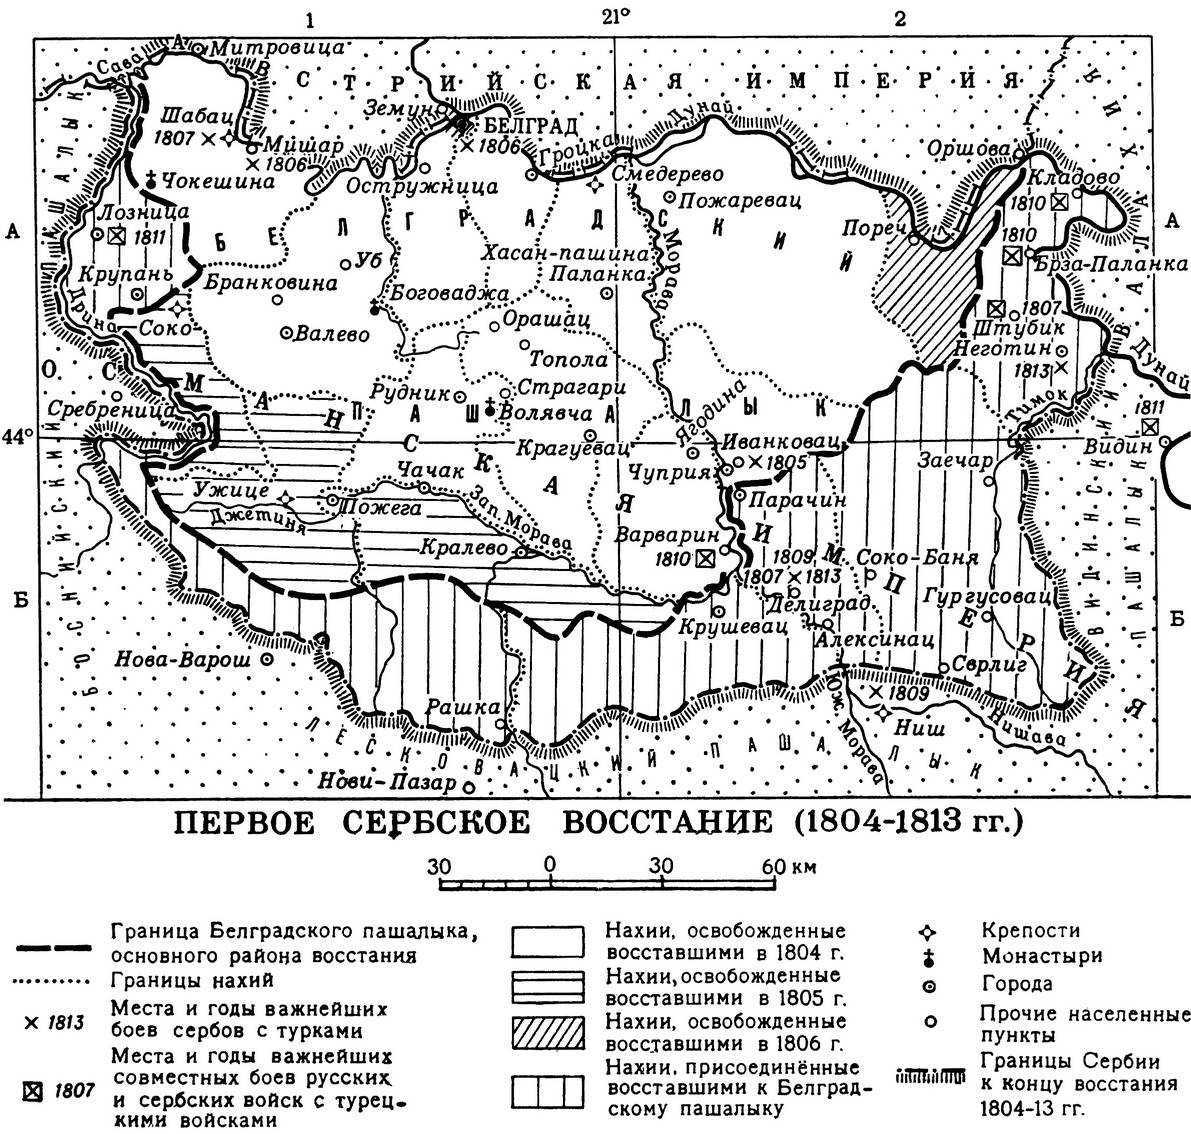 ПЕРВОЕ СЕРБСКОЕ ВОССТАНИЕ 1804-13